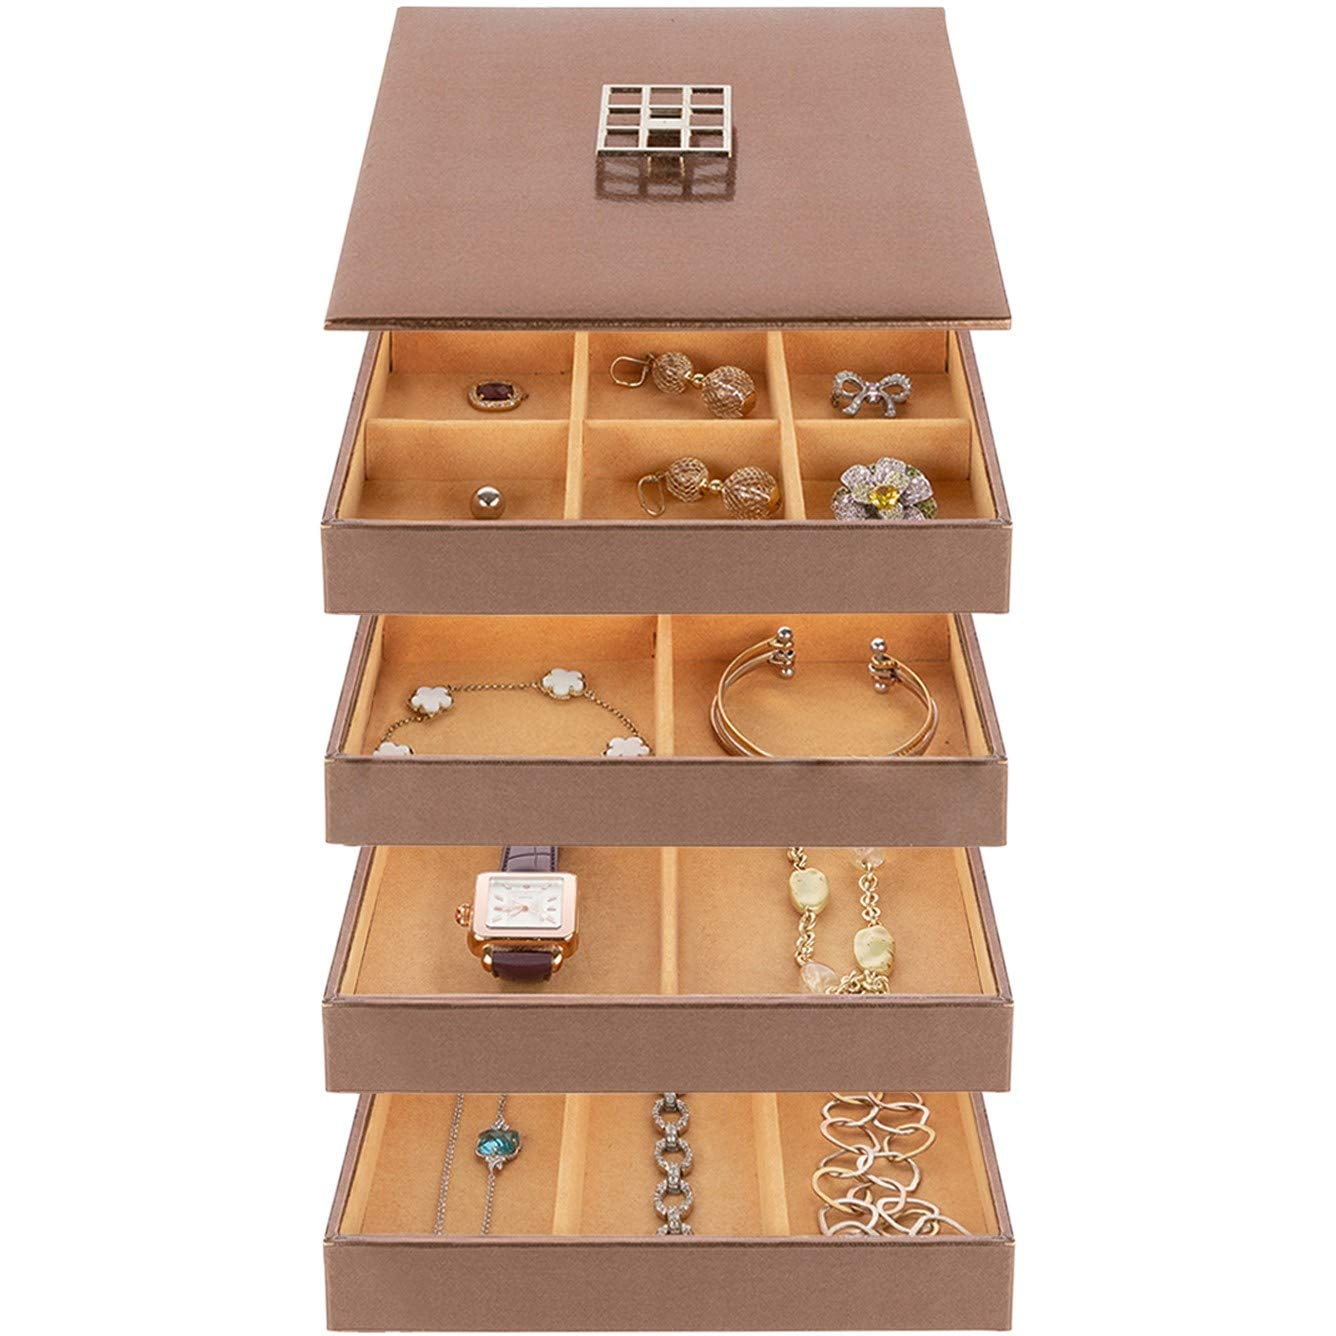 Jewelry storage tray